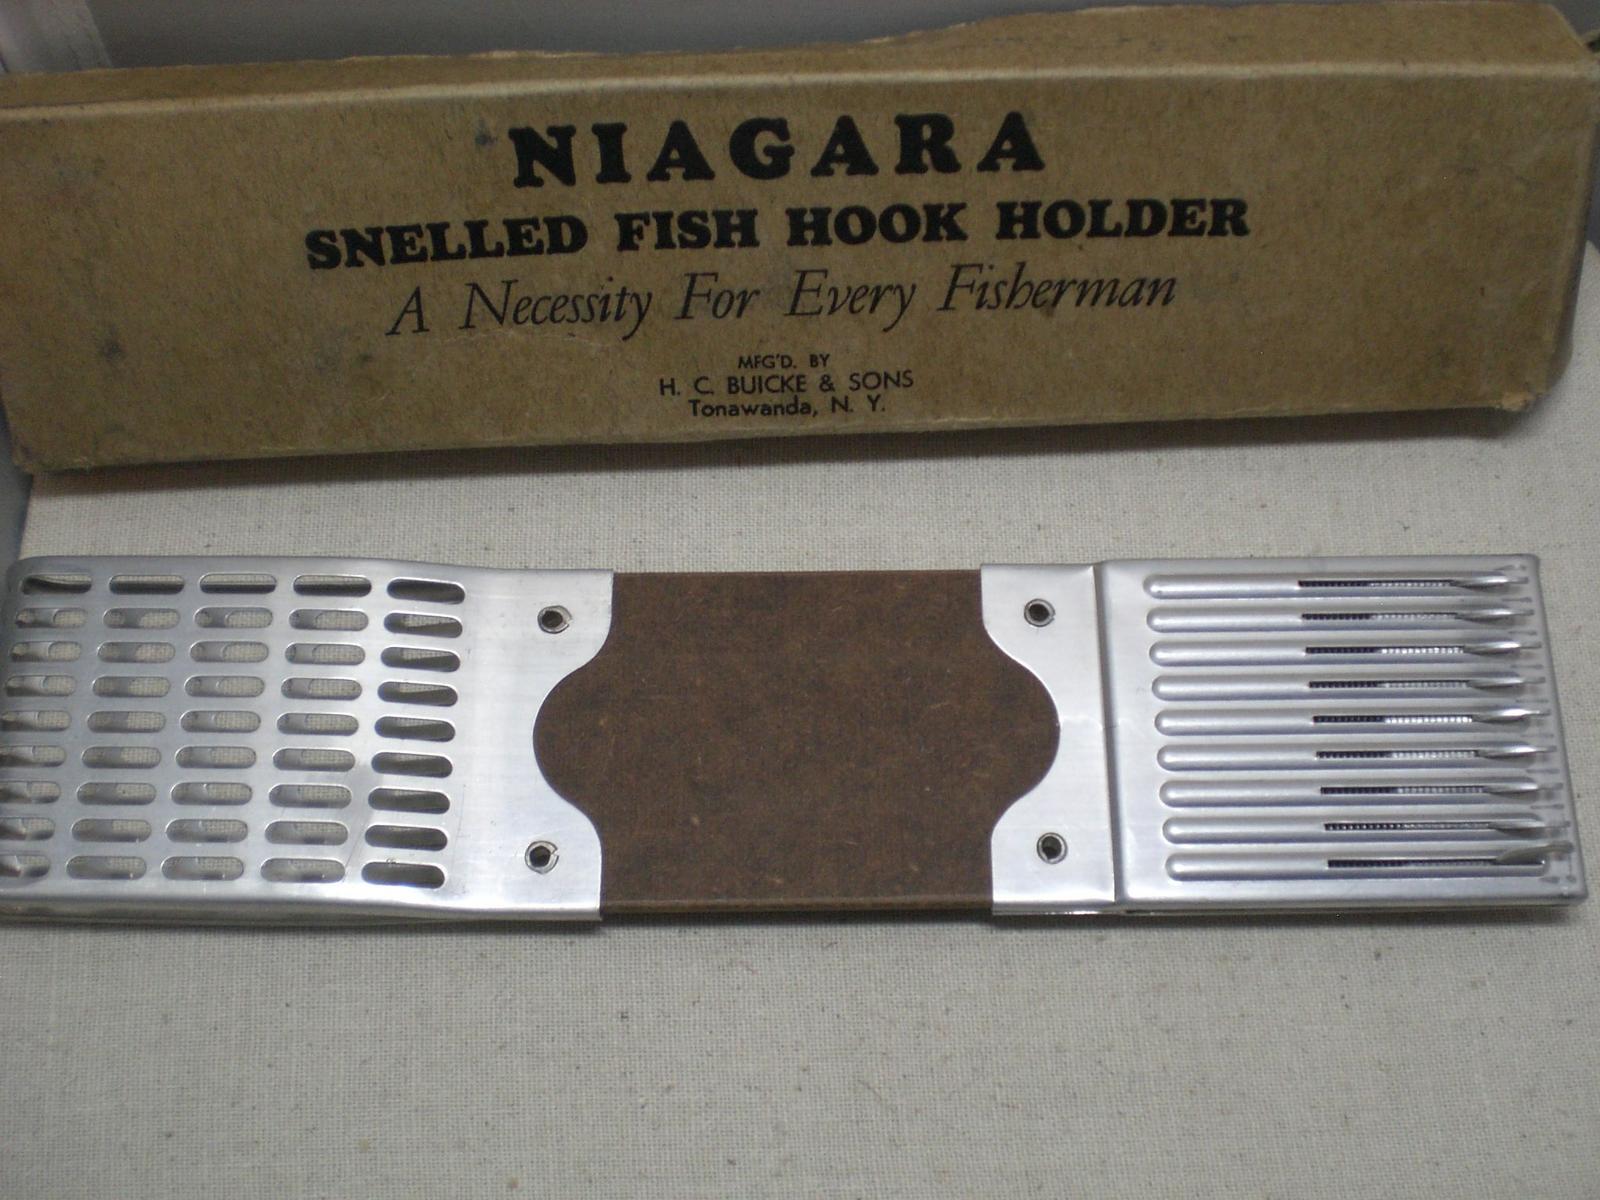 Niagara snelled fish hook holder